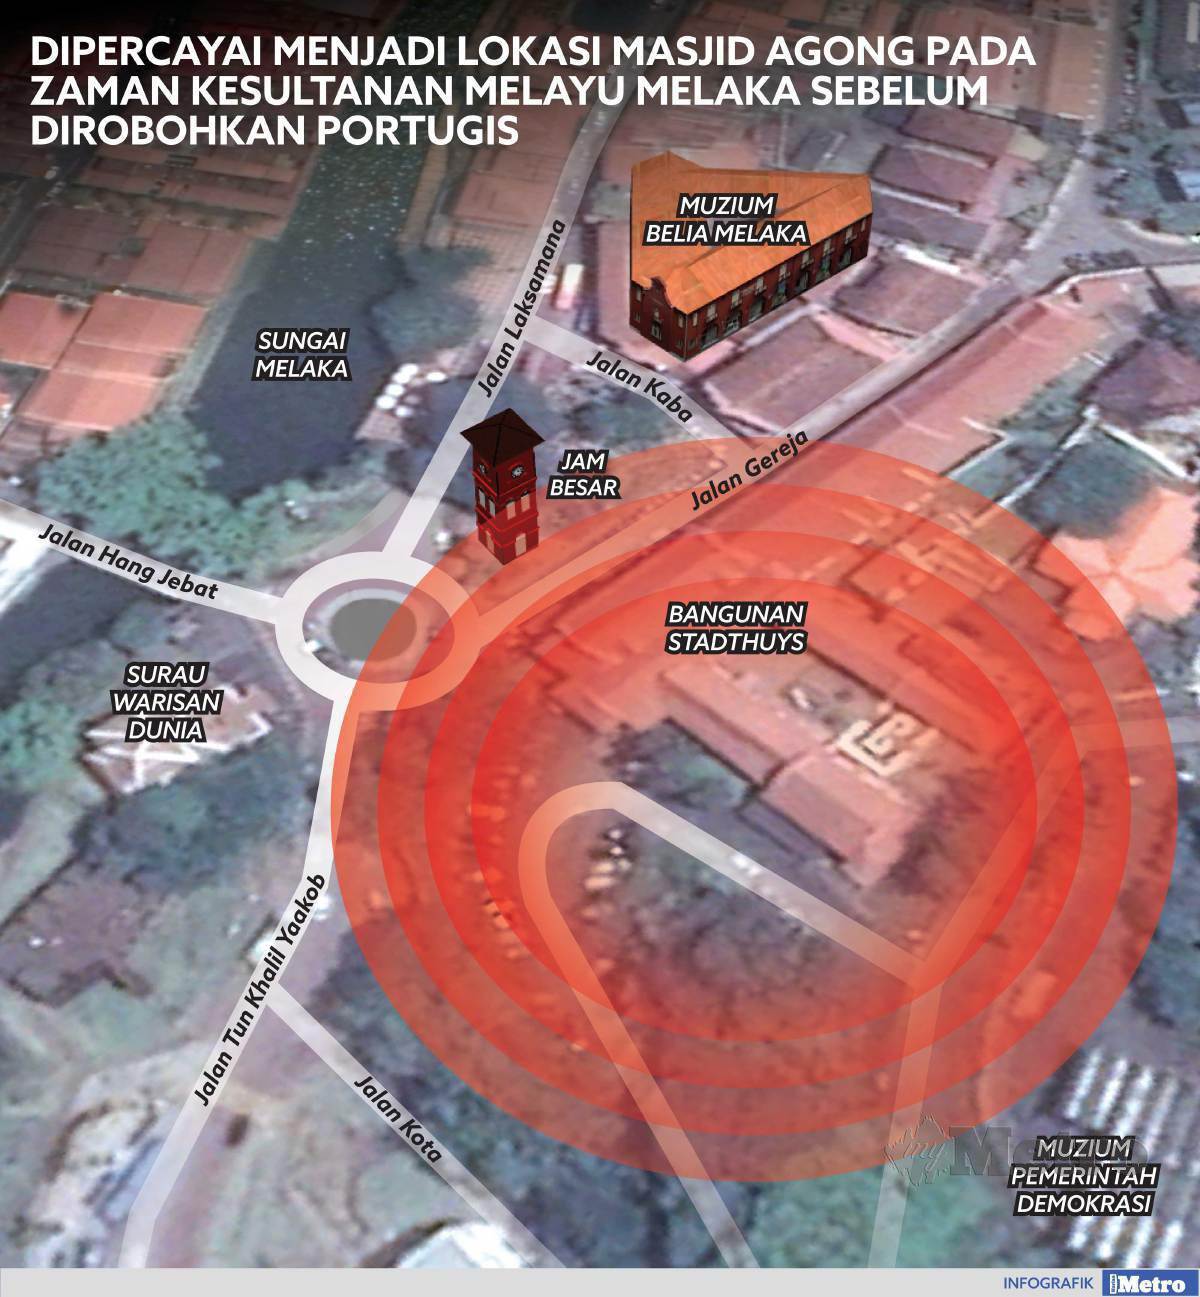 Melaka masjid agung